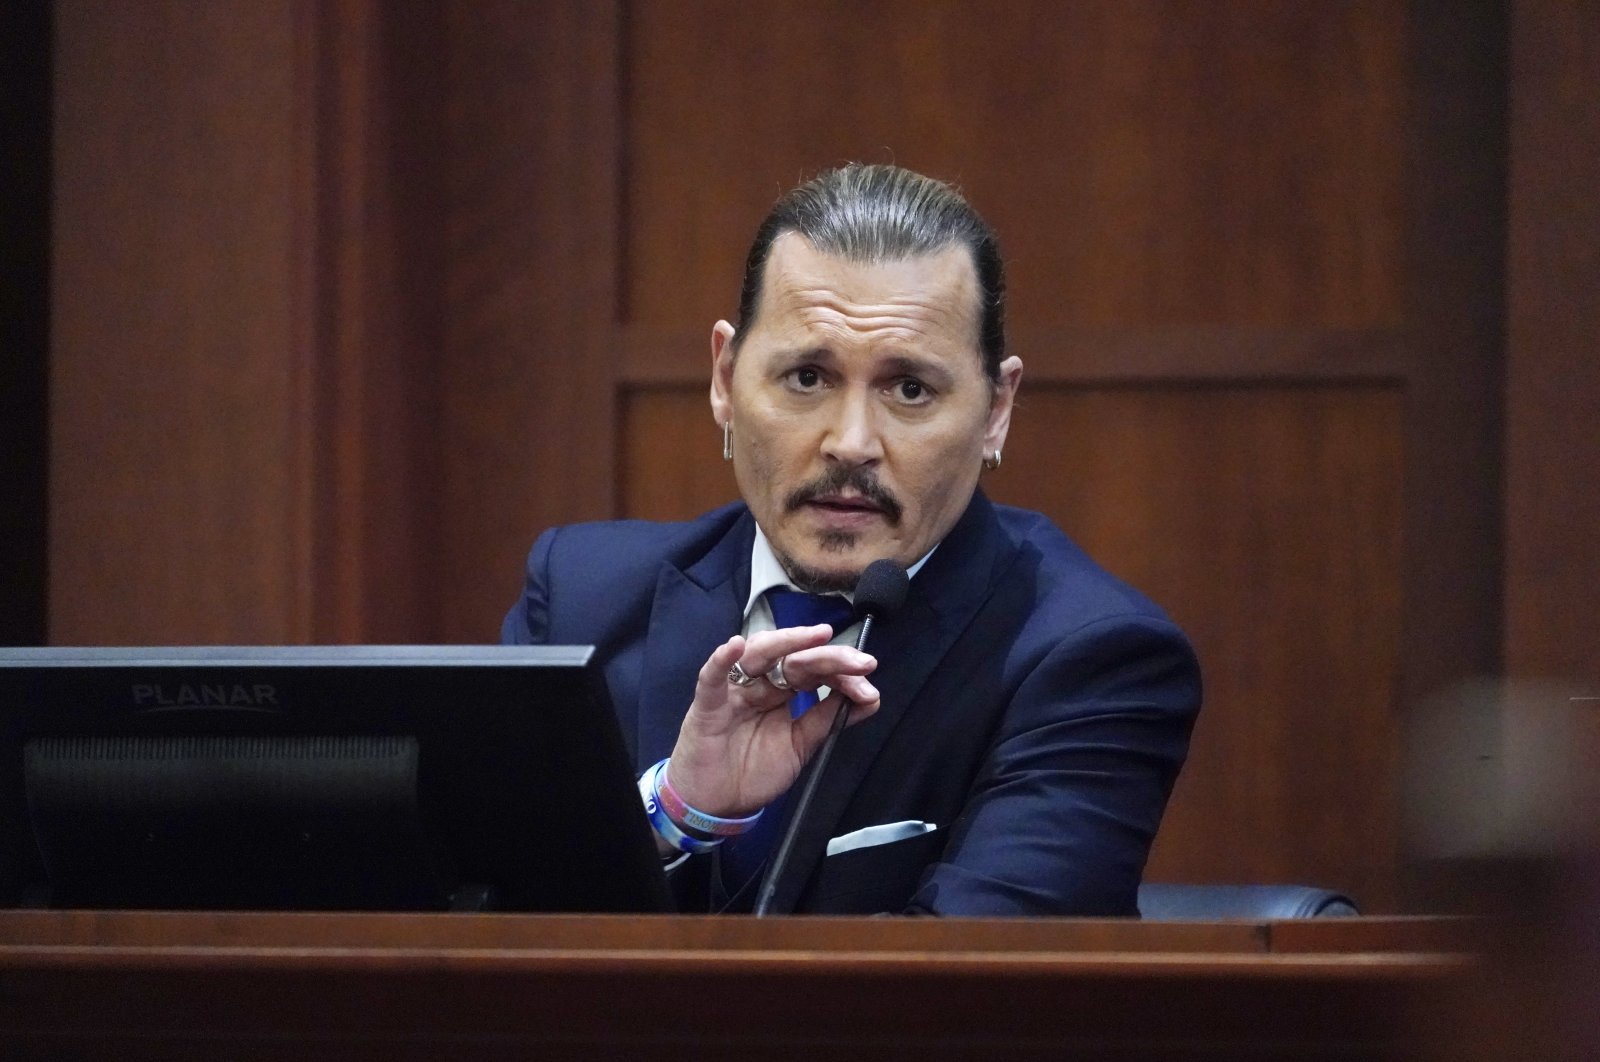 Johnny Depp menyimpulkan kesaksian dalam gugatan pencemaran nama baik, mengatakan dia ‘rusak’